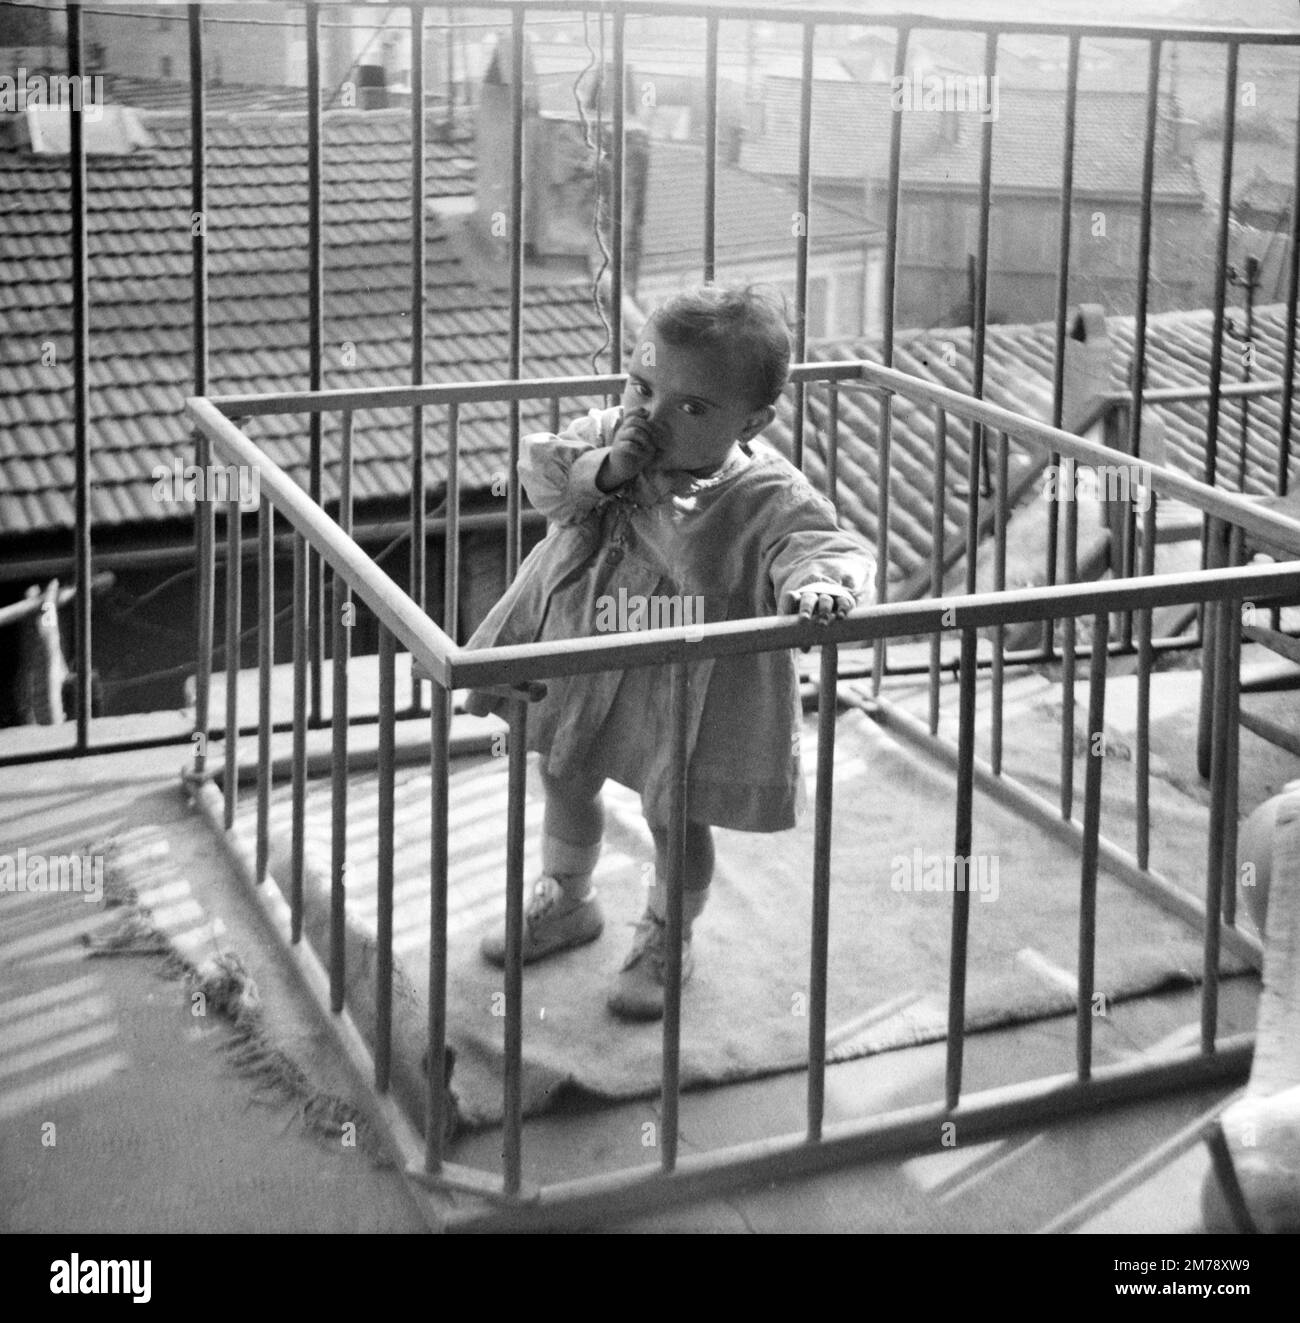 Baby, Baby oder Kleinkind in einem hölzernen Kinderstall auf einem Balkon in Marseille, Frankreich 1945. Klassische Schwarzweiß- oder Schwarzweißfotos. Stockfoto